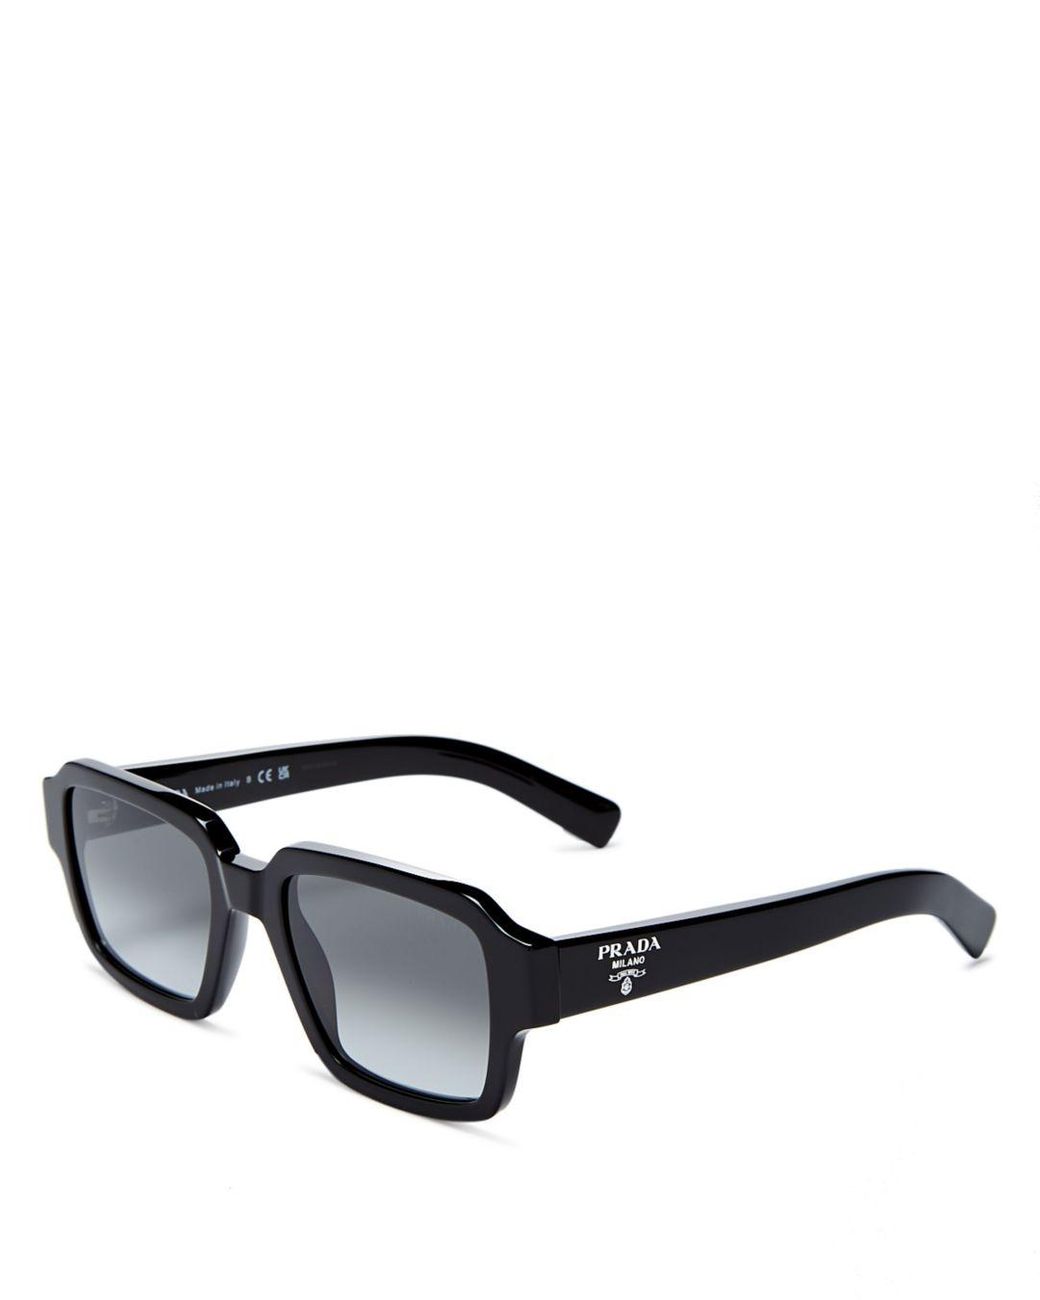 Prada Square Sunglasses in Black | Lyst